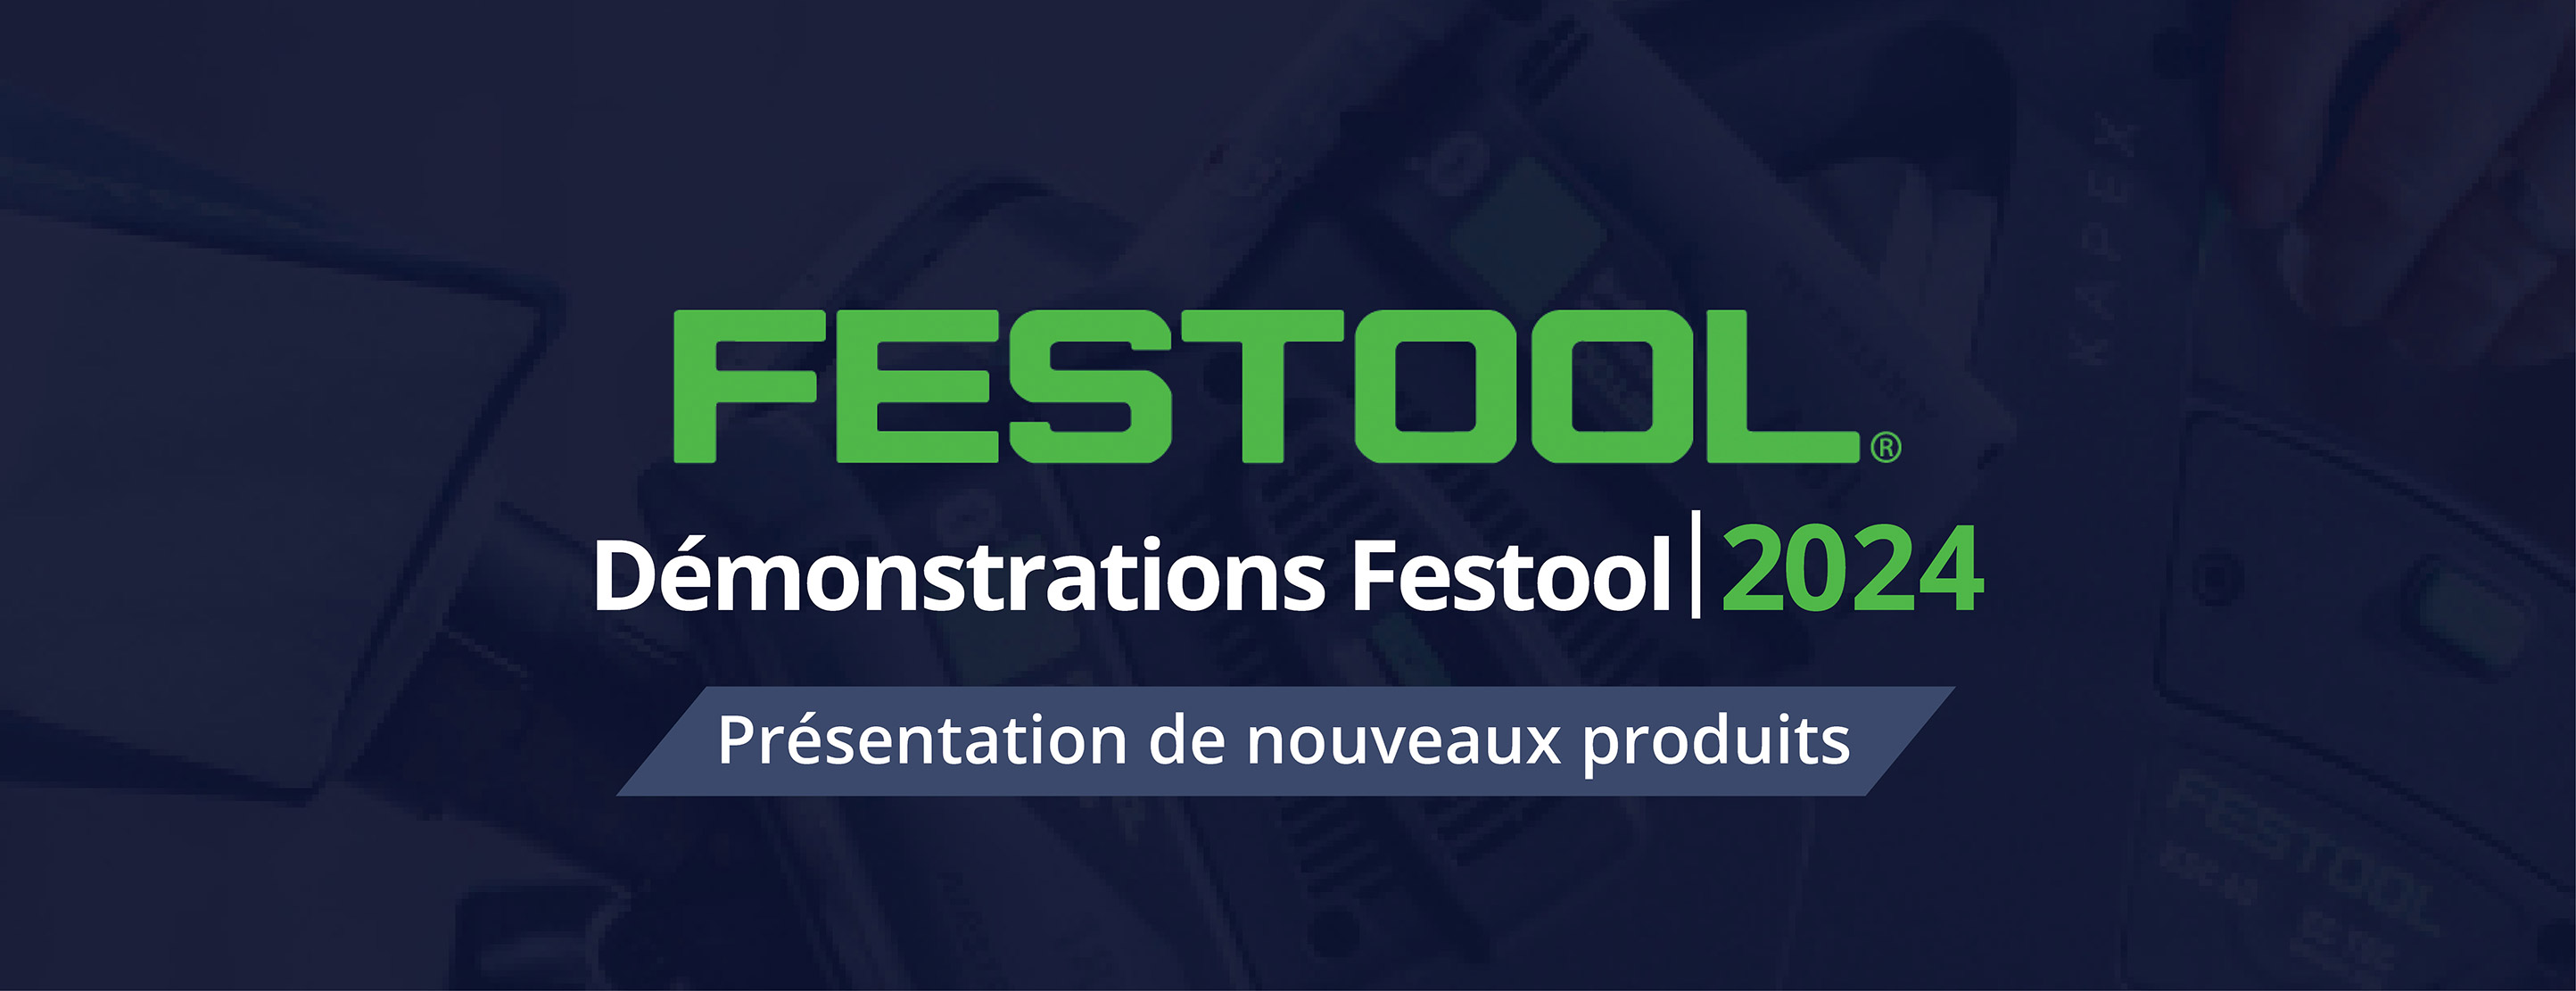 Démontrations Festool 2024. Présentation de nouveaux produits.